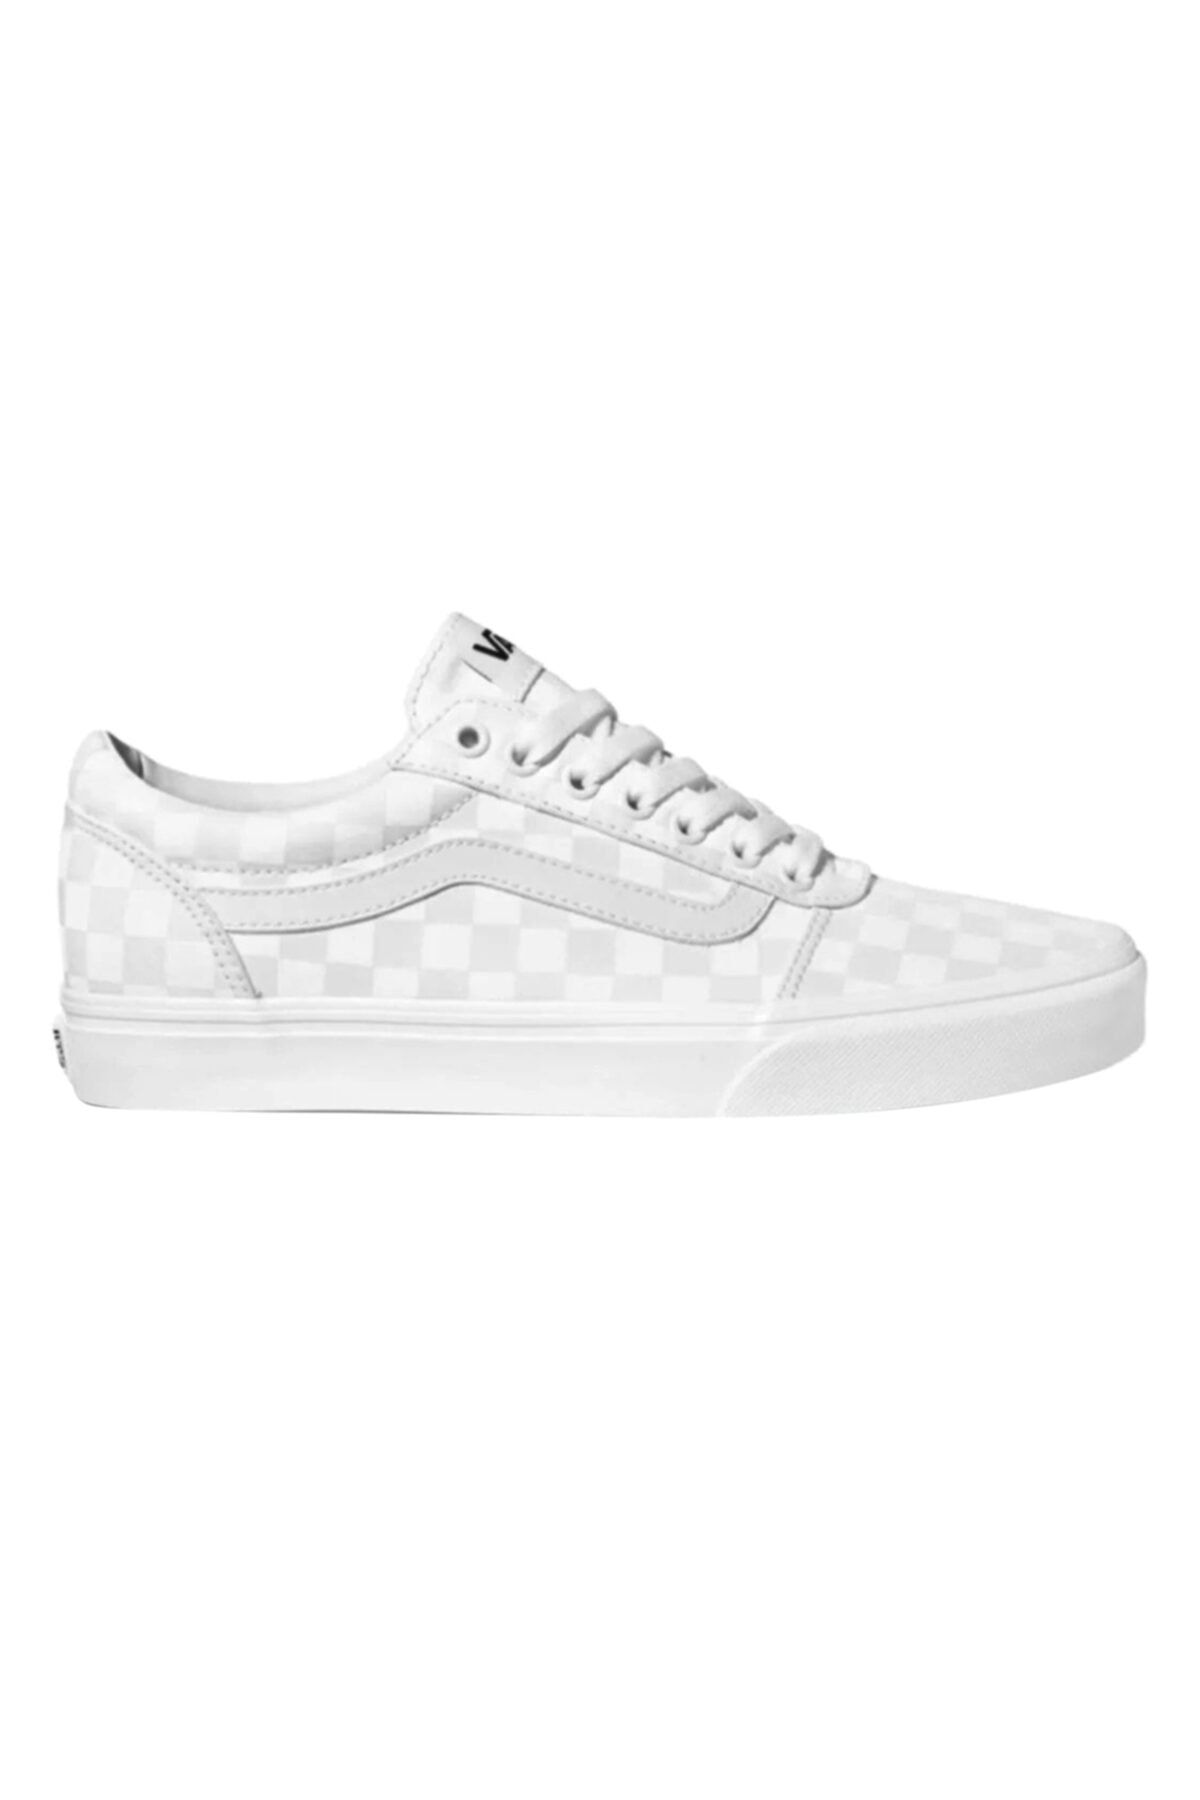 Vans MN WARD Beyaz Erkek Sneaker Ayakkabı 100575266